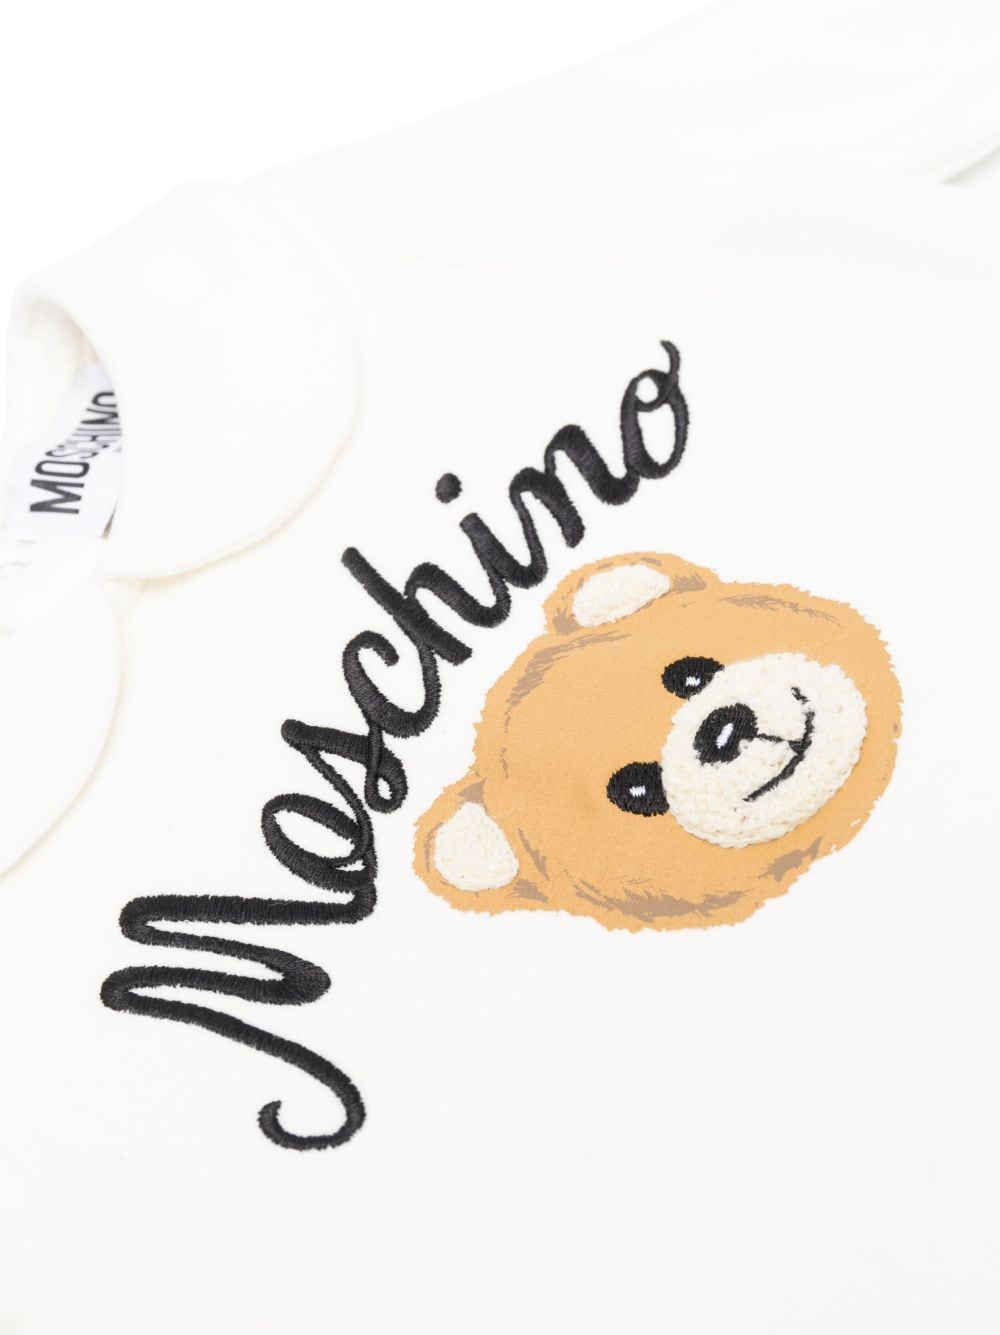 White onesie set for newborns with logo